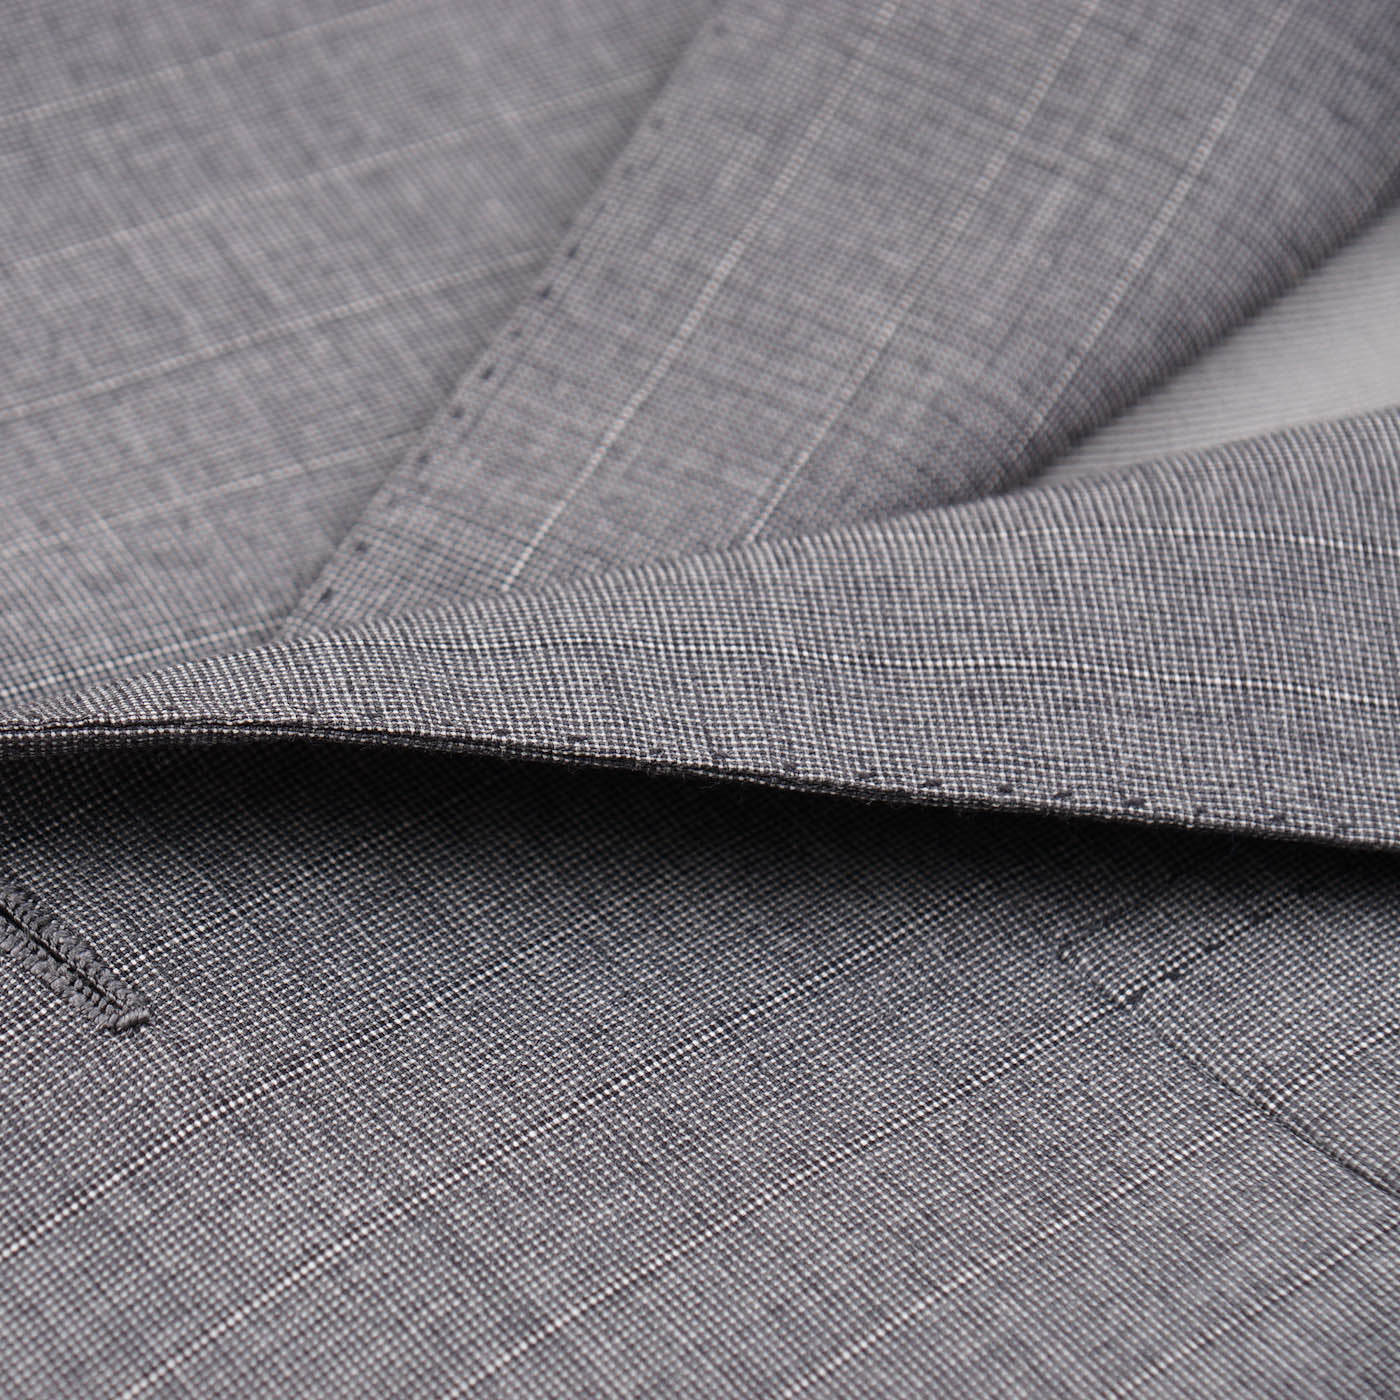 Cesare Attolini Lighter Gray Striped Wool Suit - Top Shelf Apparel